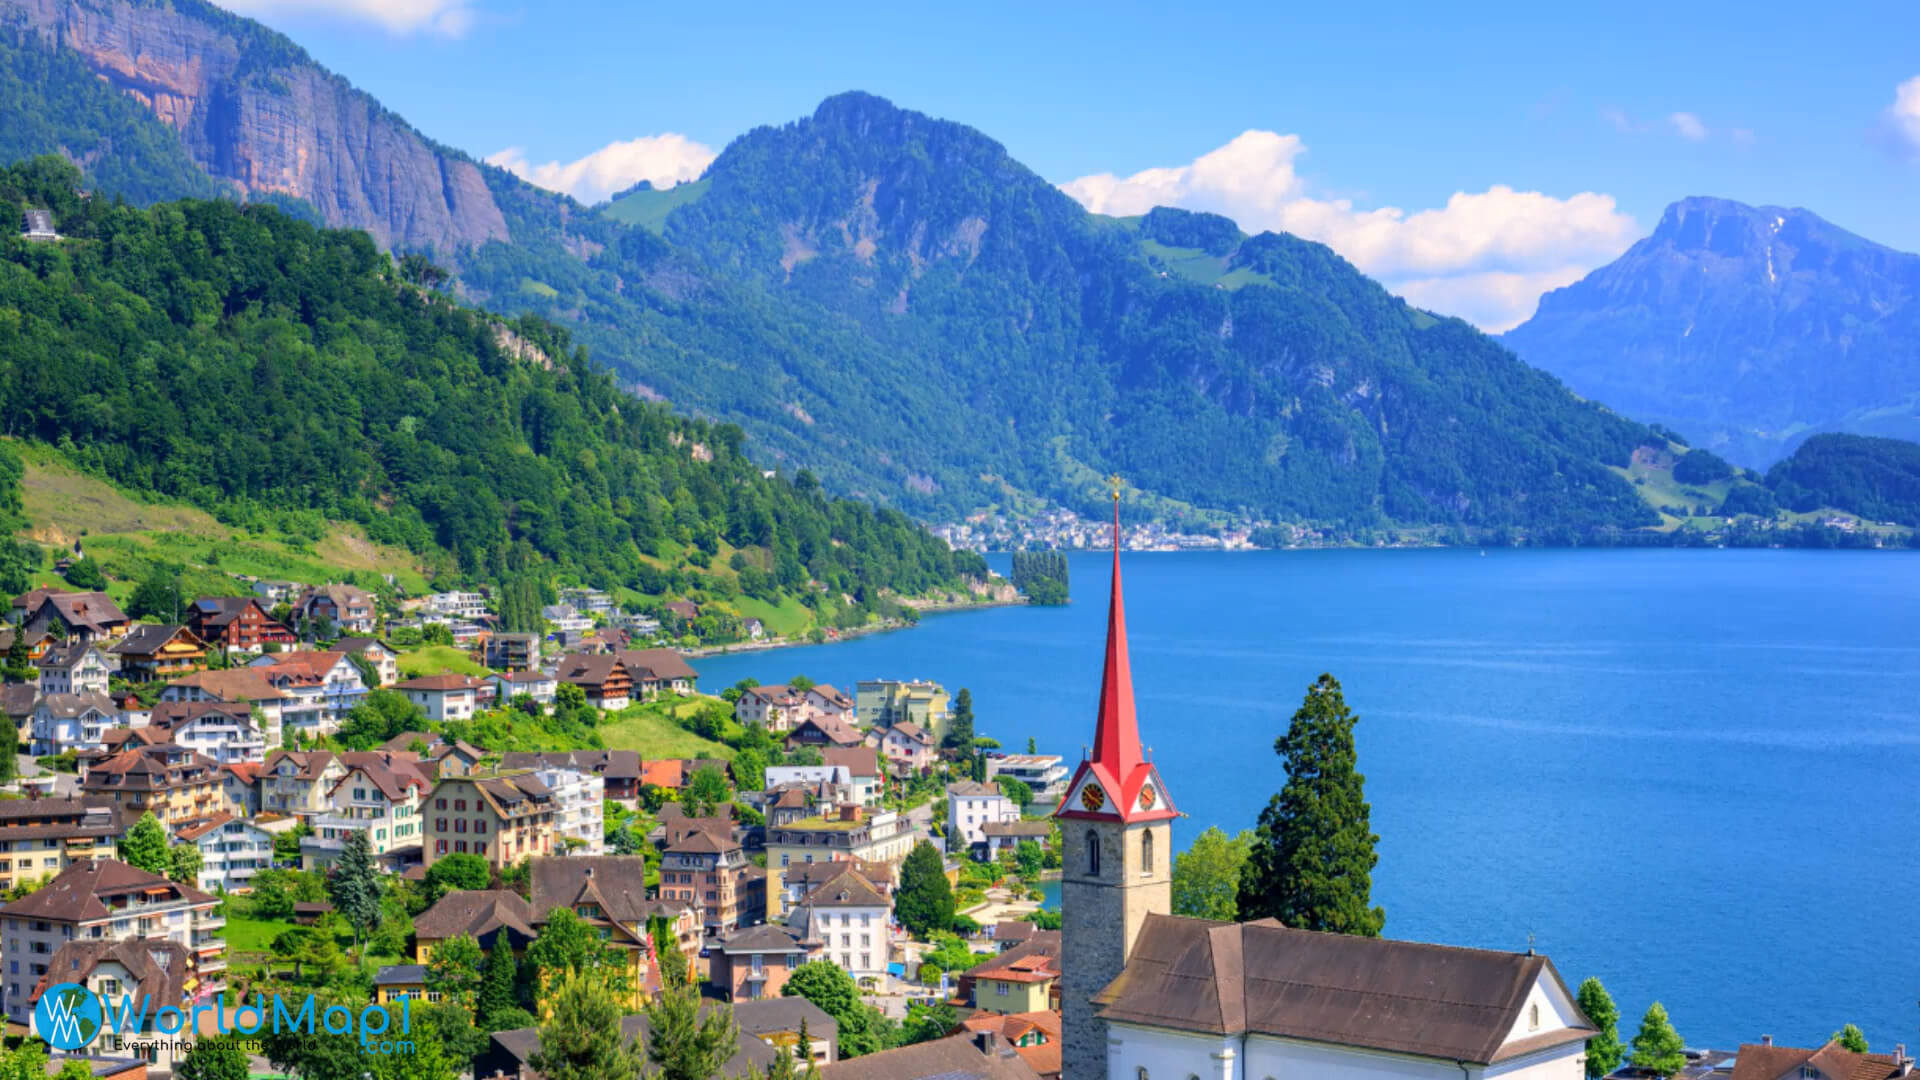 A Vista from Lucerne